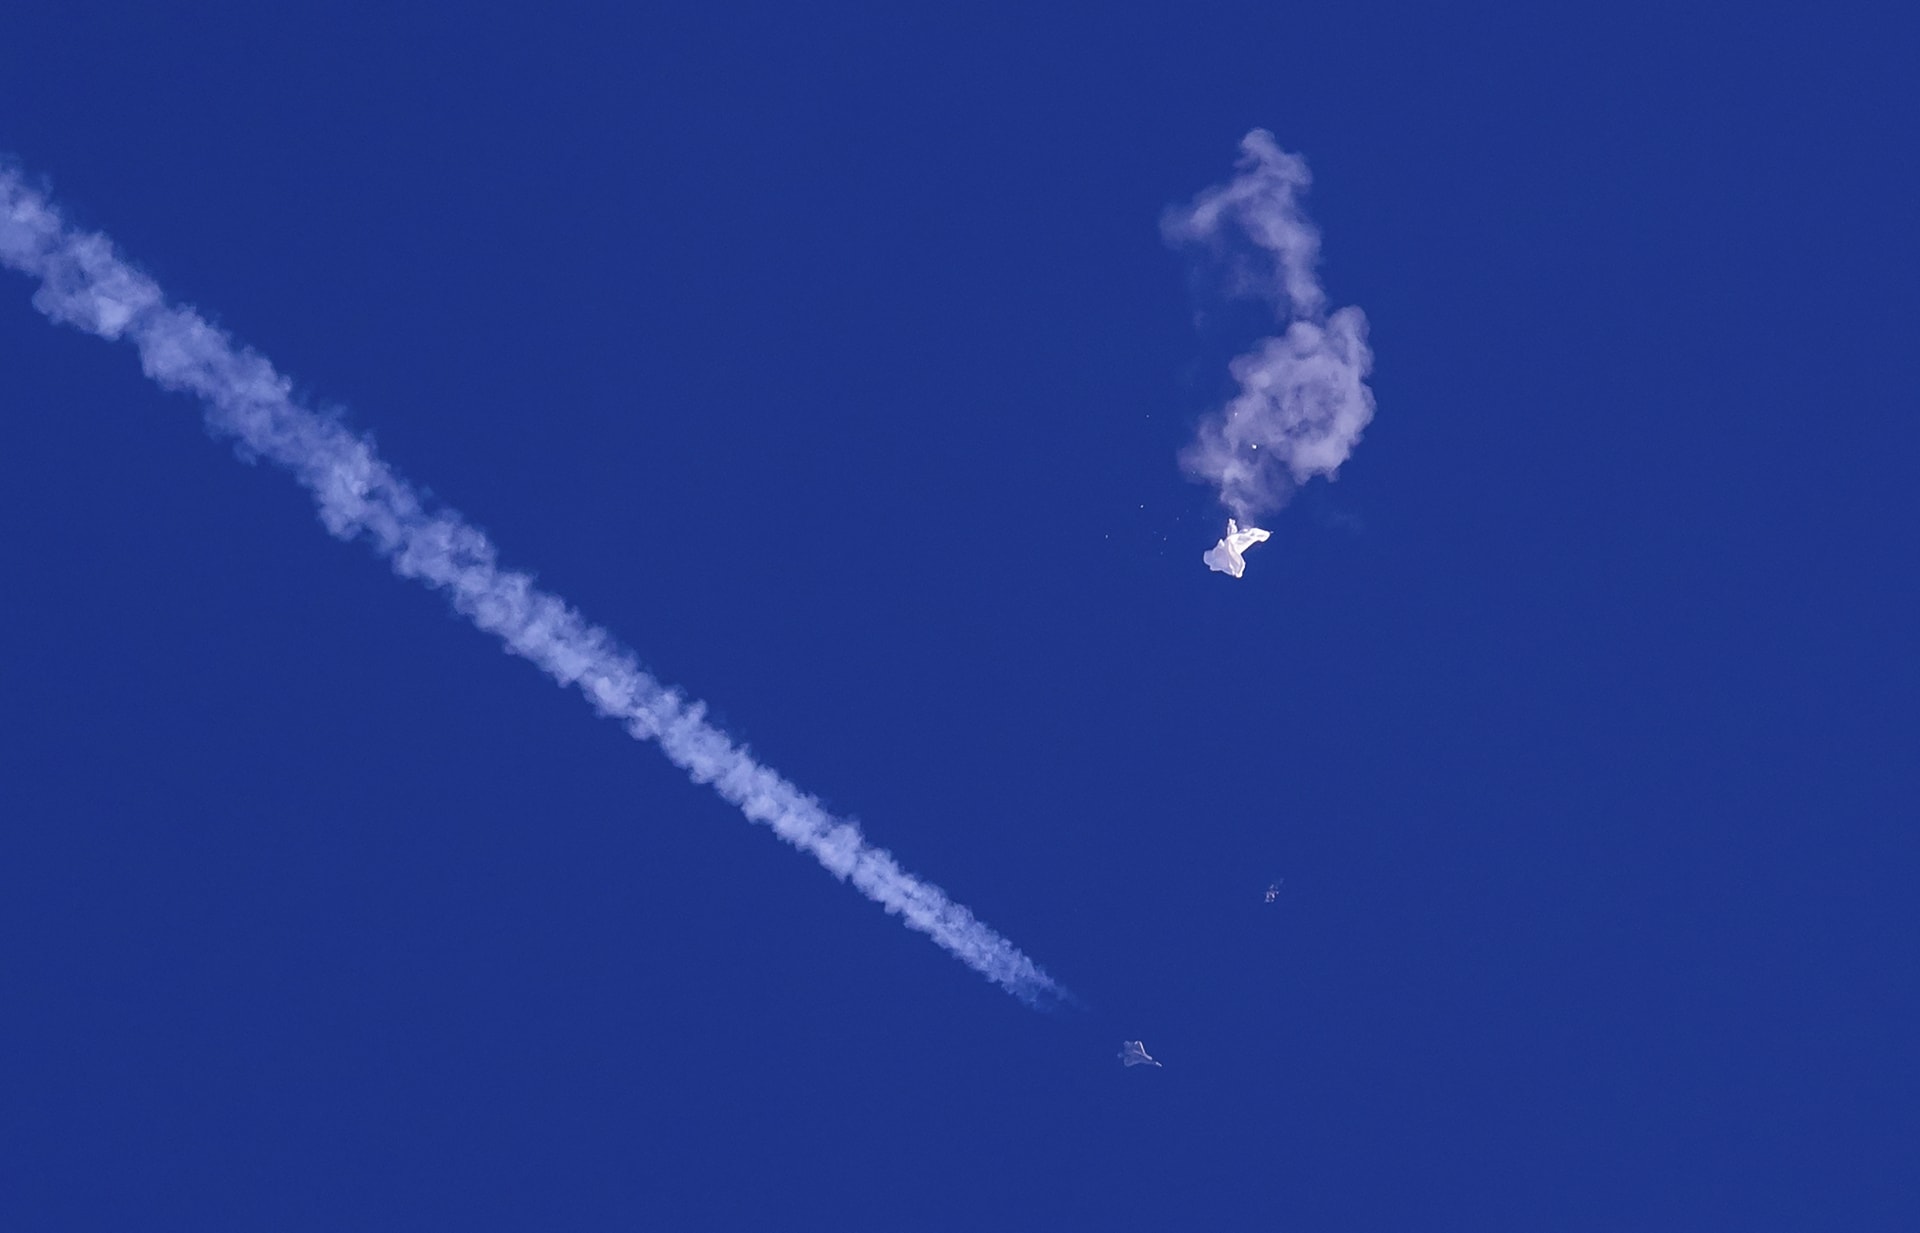 Americká stíhačka sestřelila jeden z balonů nad Atlantikem / AP.